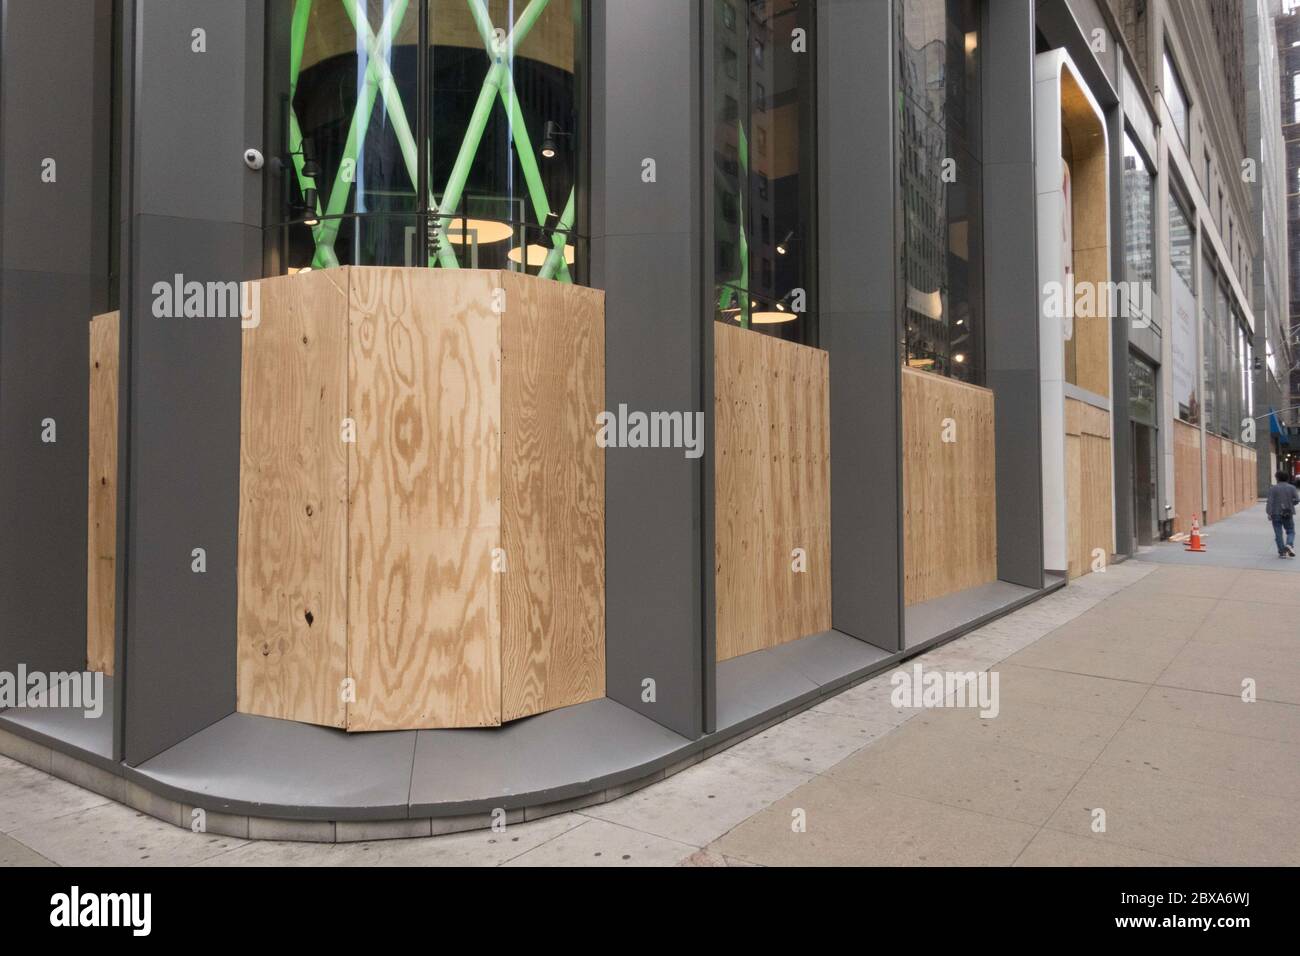 Le imprese di Manhattan sono tutte salite in risposta a saccheggi, saccheggi e vandalismo, giugno 2020, New York City, USA Foto Stock